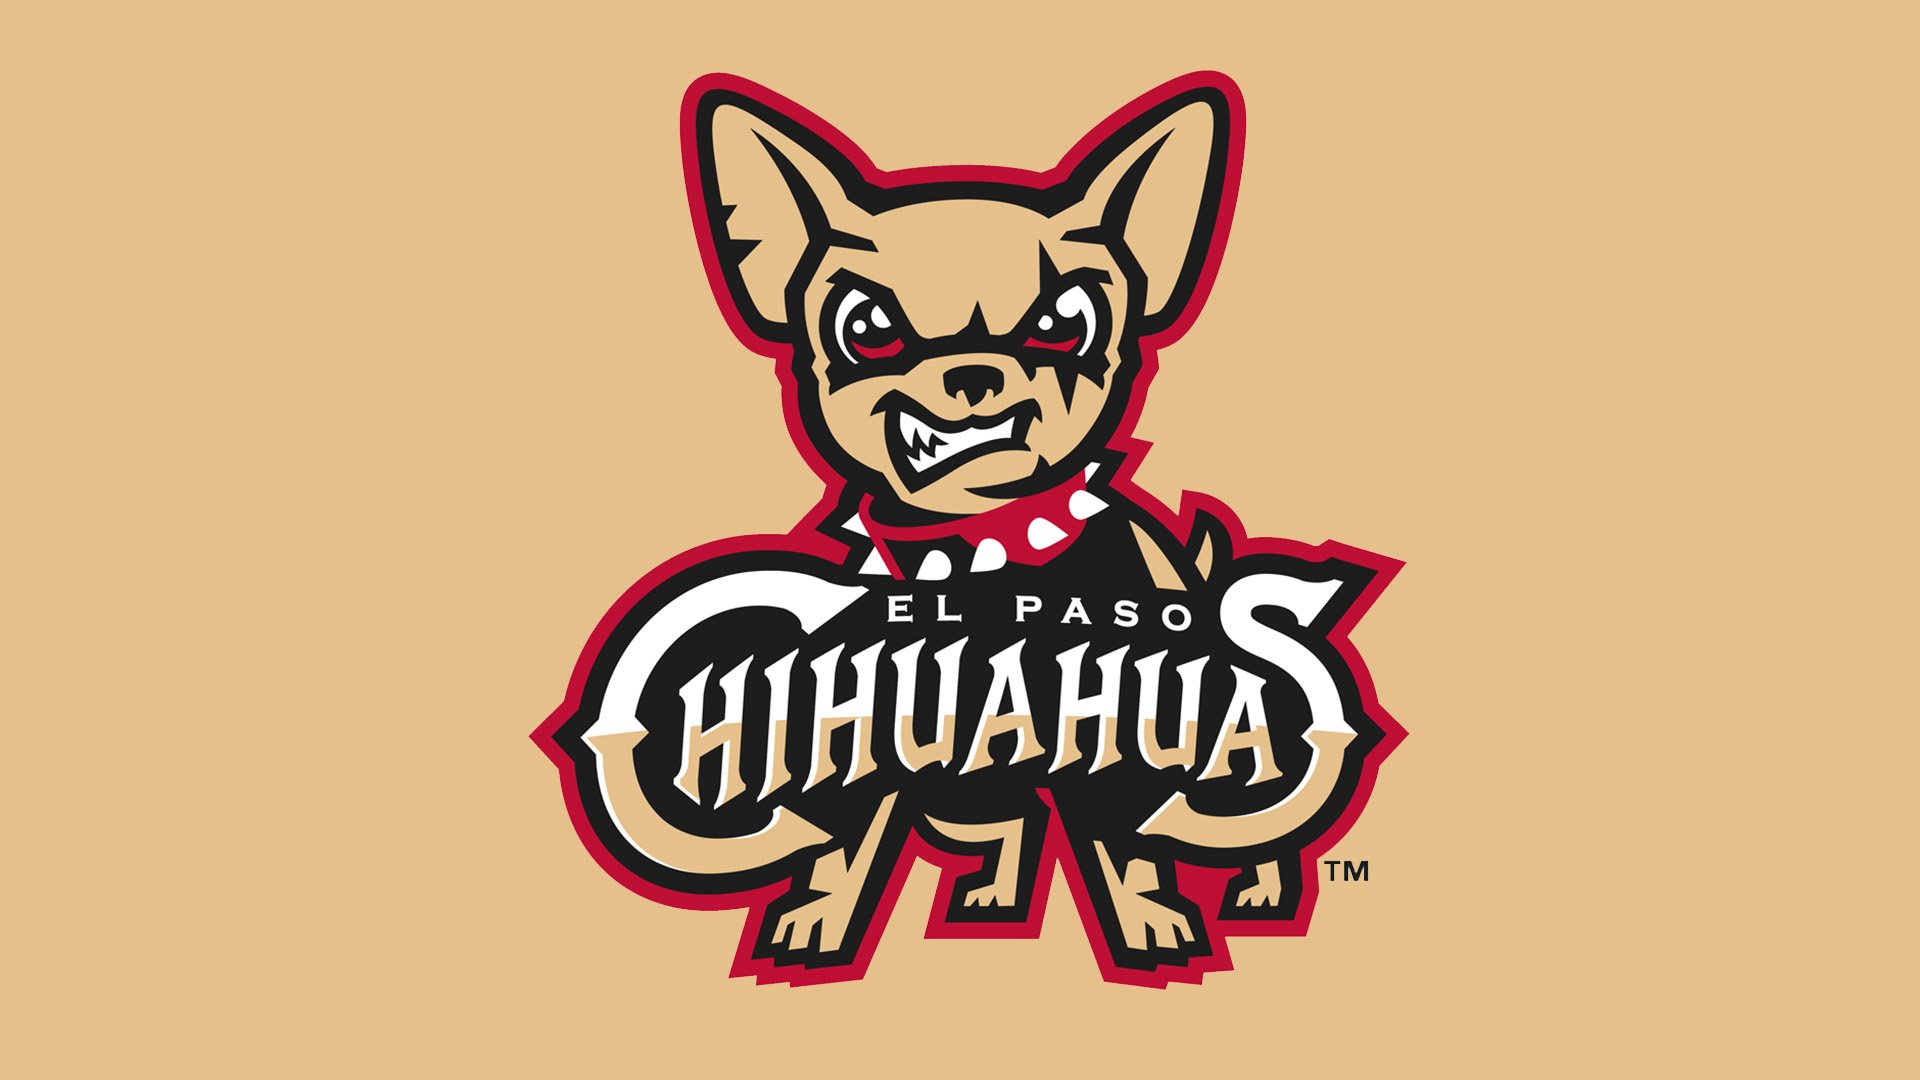 El Paso Chihuahuas - Wikipedia